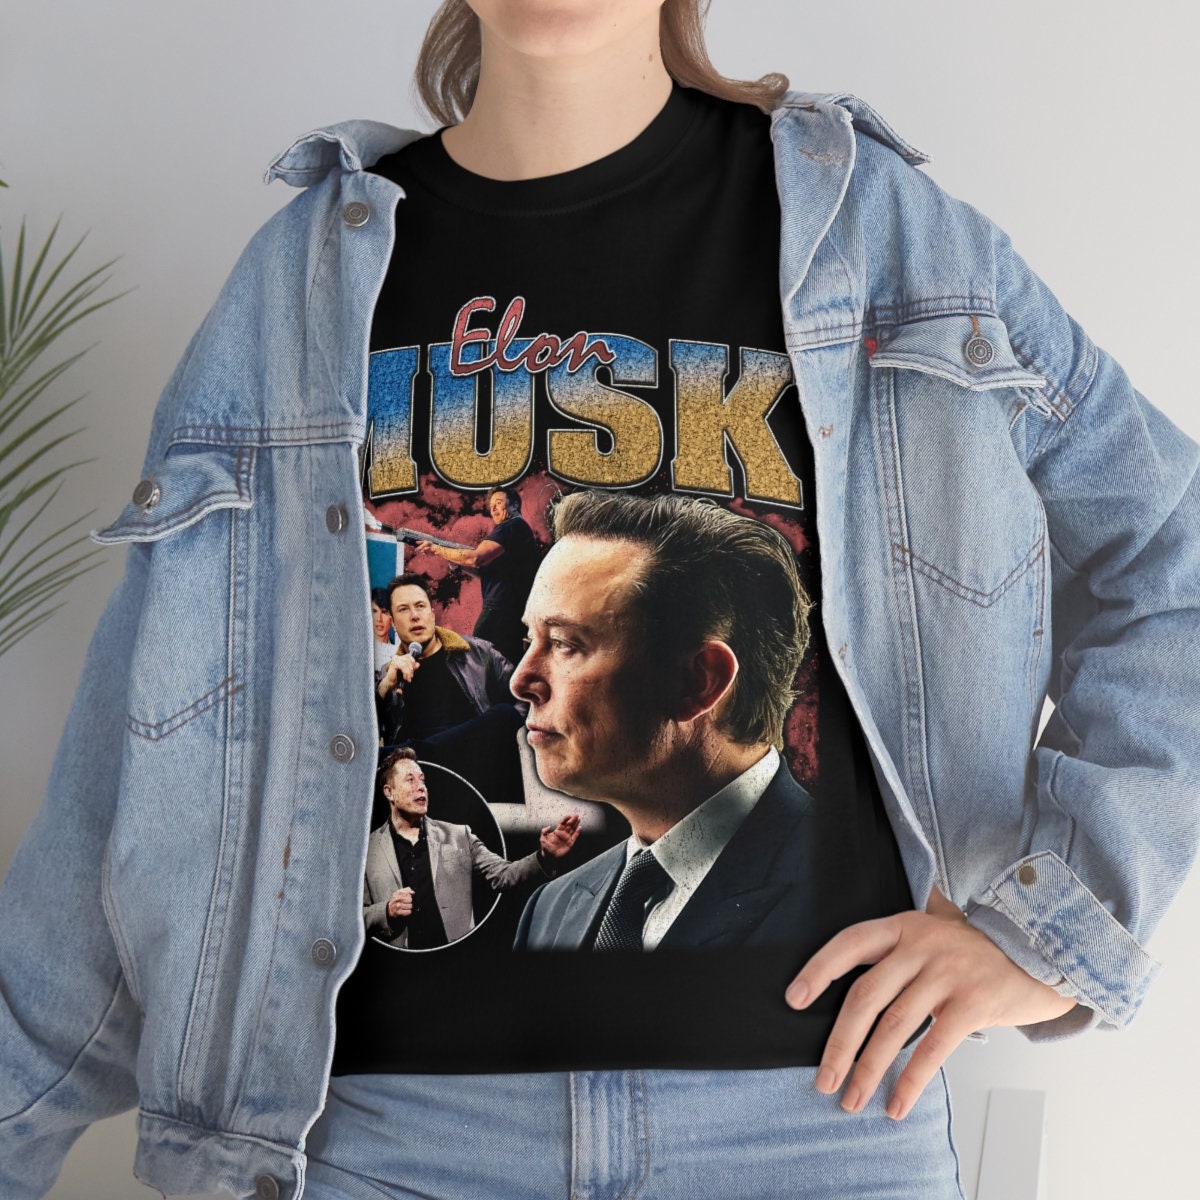 Discover ELON MUSK vintage shirt - Elon Musk Tesla Twitter bootleg 90s retro t-shirt